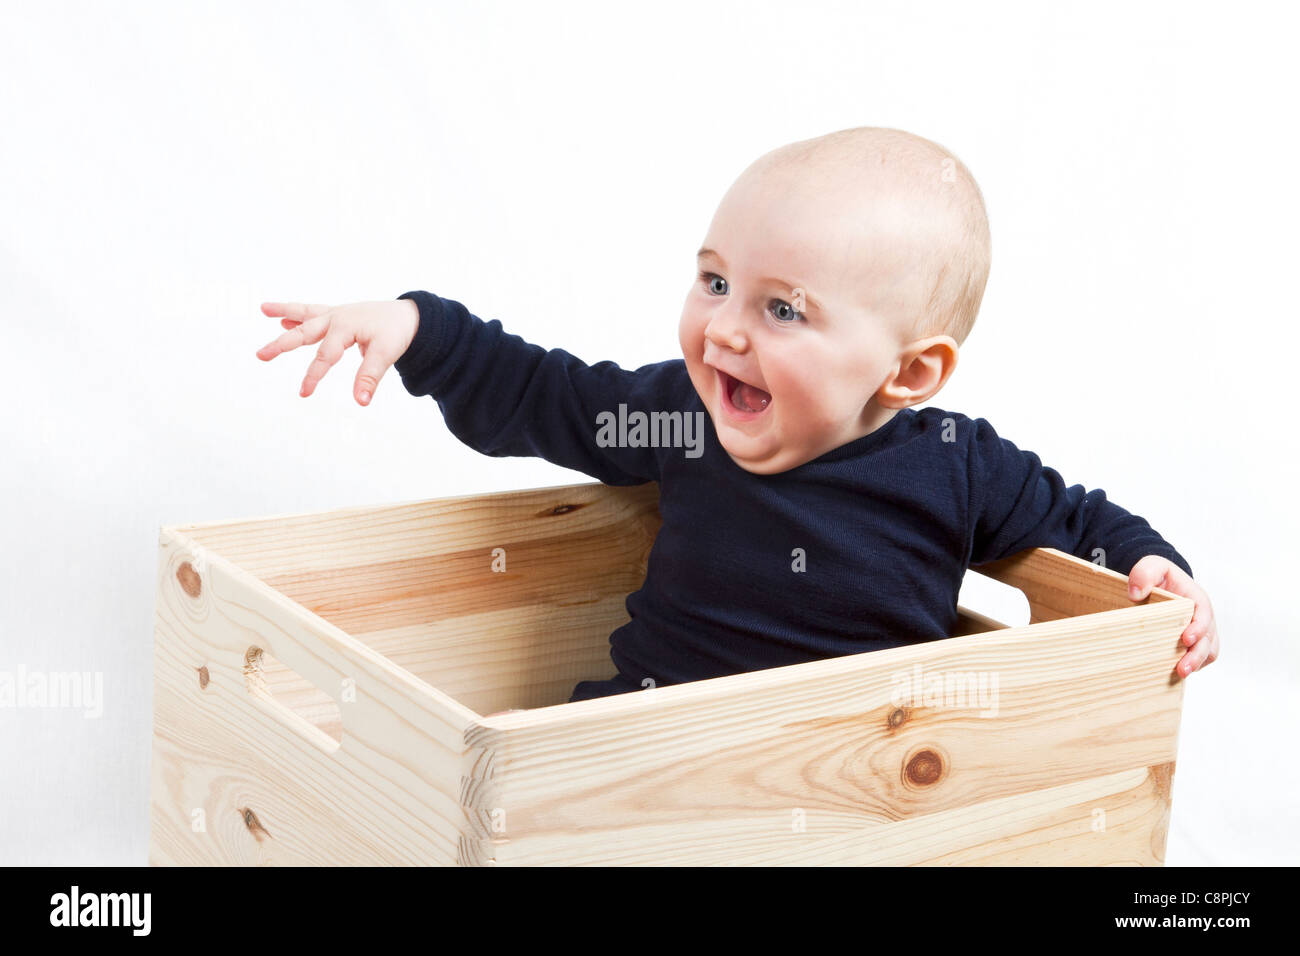 junges Kind sitzen in Holzkiste, der nach links zeigt Stockfoto